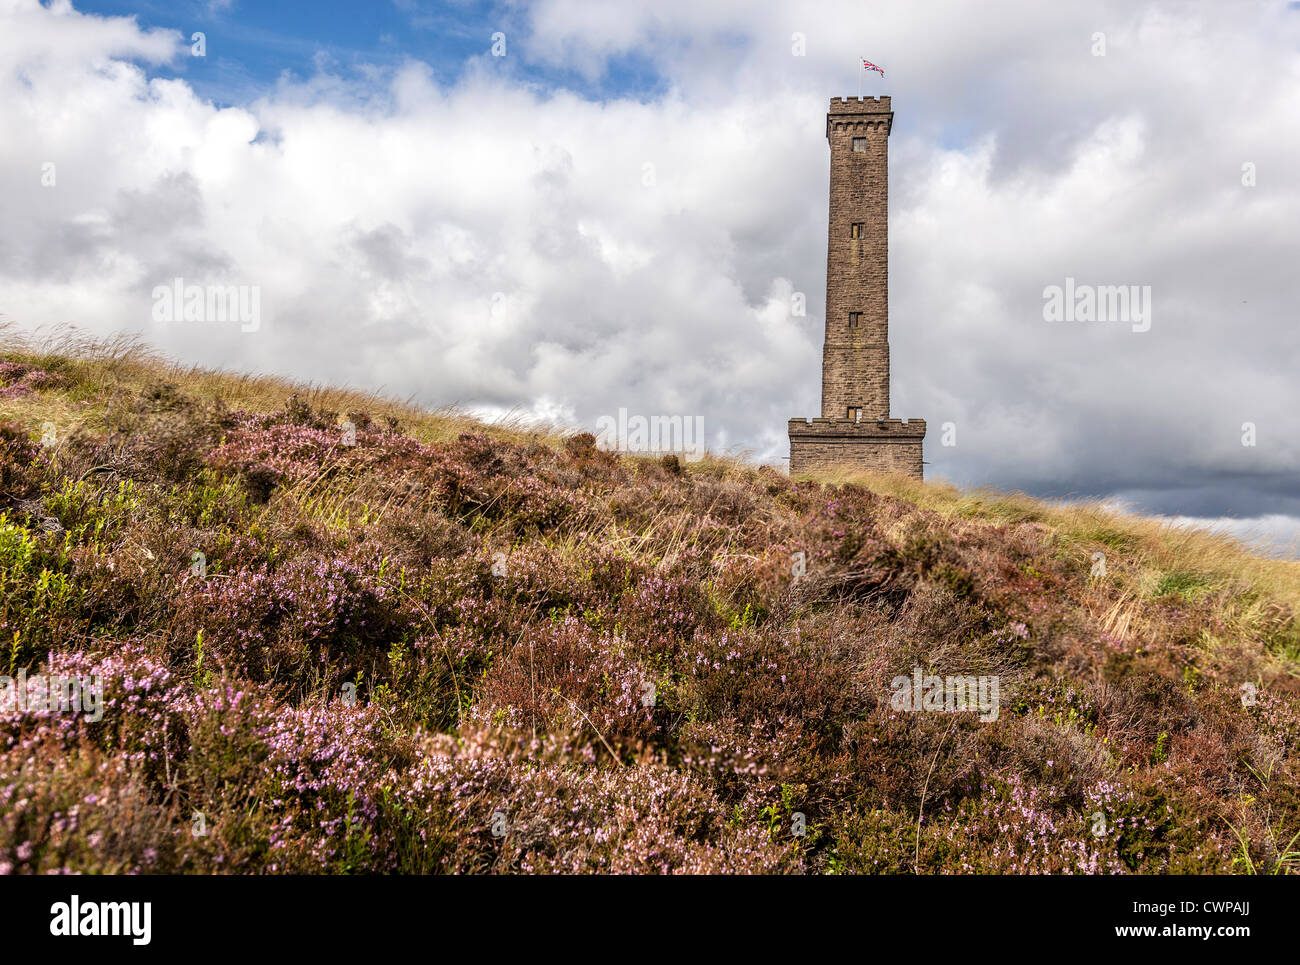 La torre di pelatura a Holcombe in Lancashire. Commemora Sir Robert Peel una volta Primo Ministro della Gran Bretagna. Foto Stock